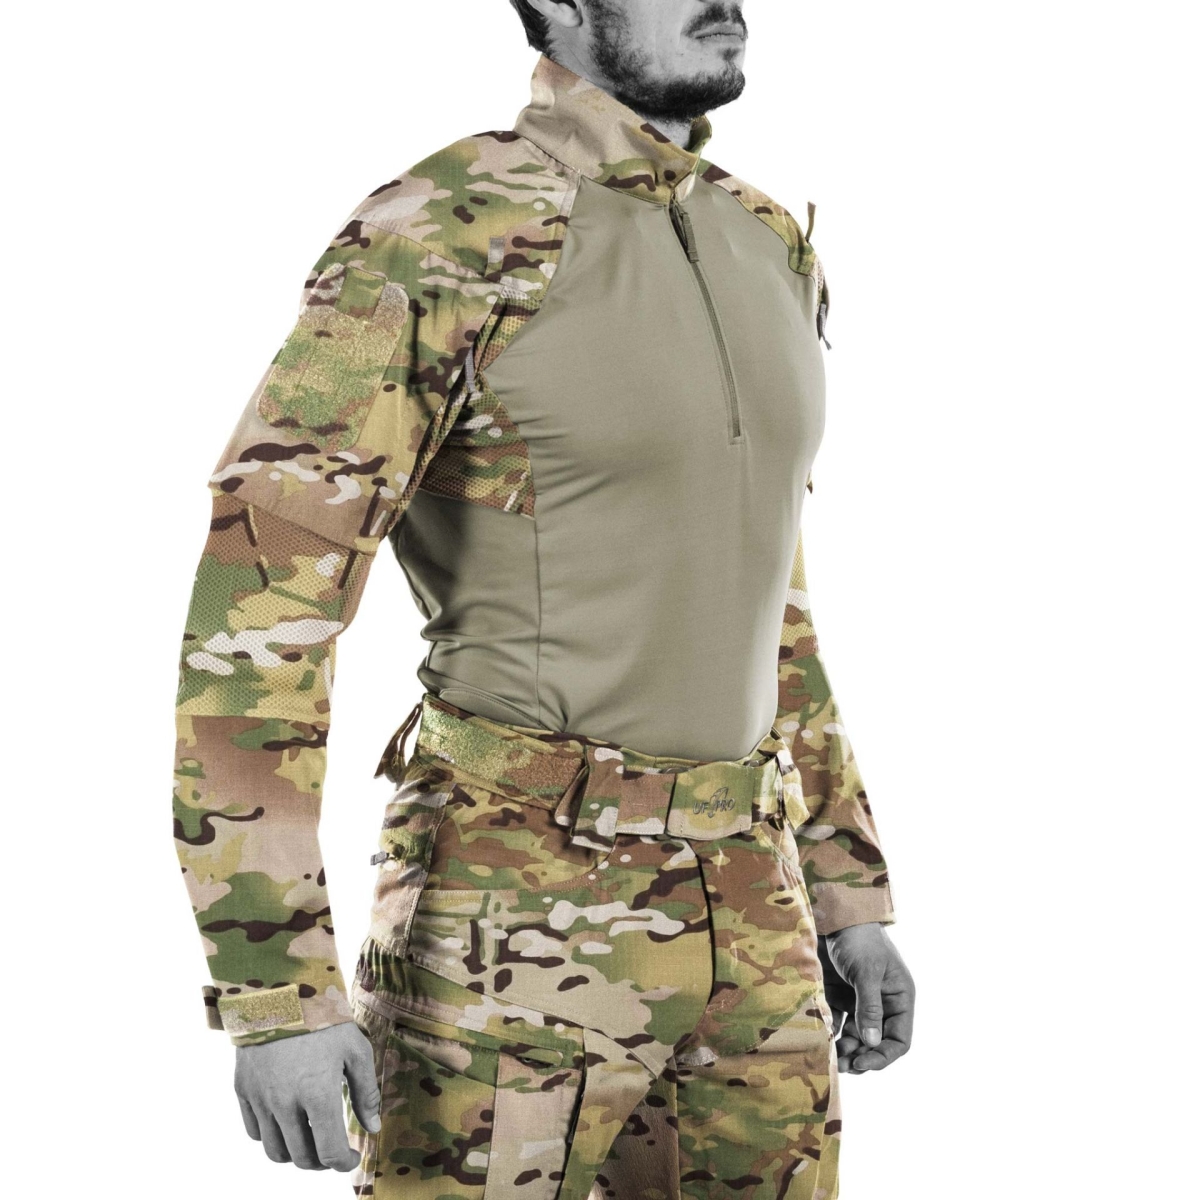 Striker XT Gen3 Combat Shirt Multicam